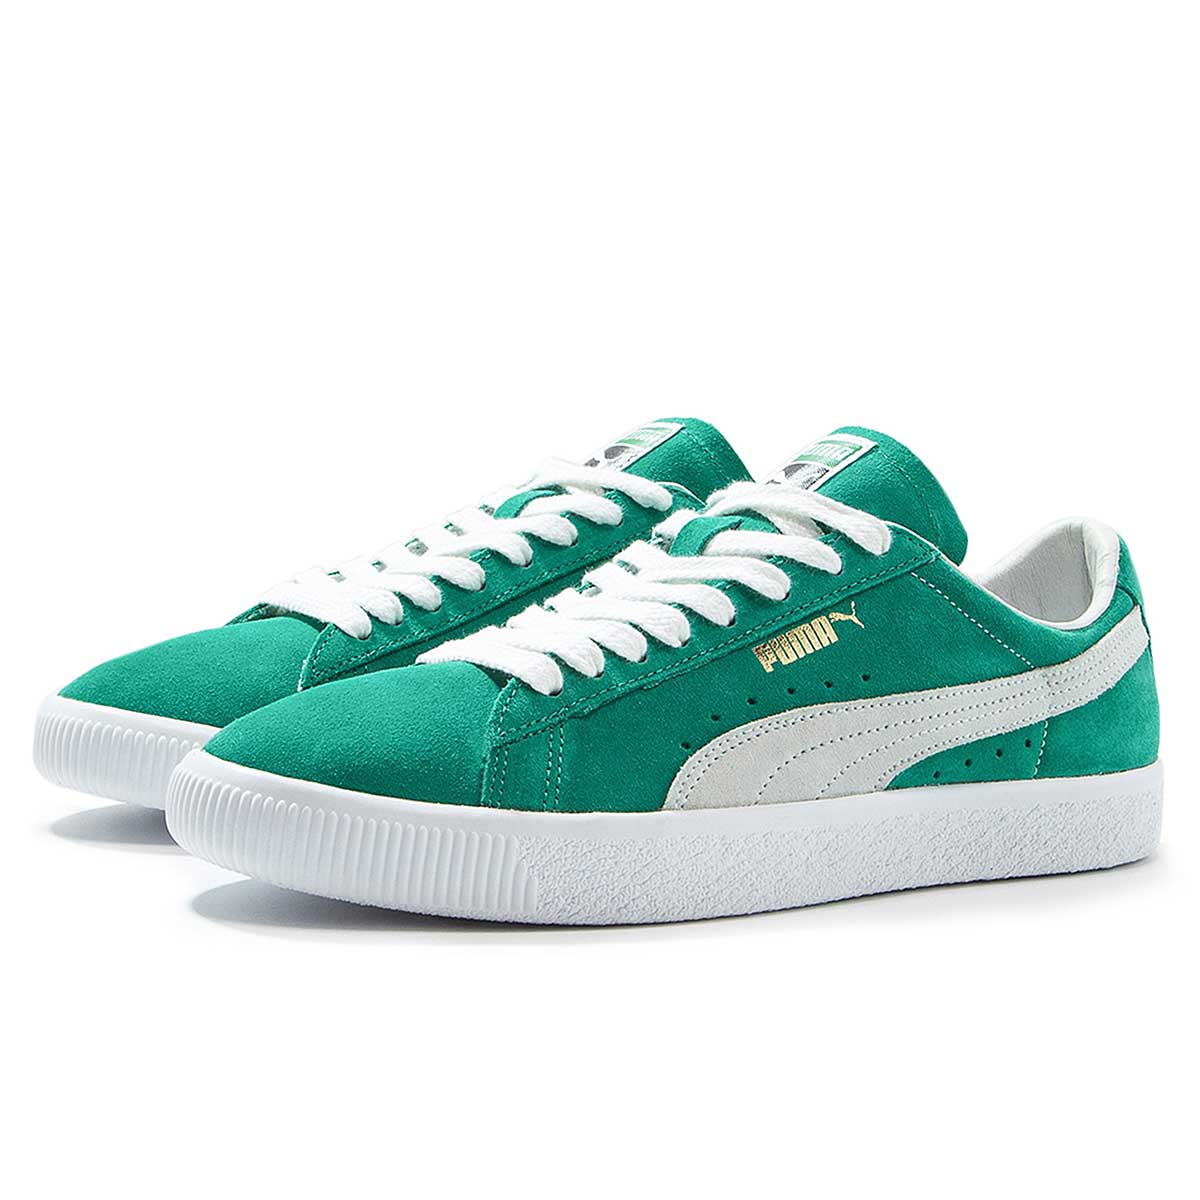 Кроссовки пума зеленые. Puma Suede Green. Puma Sneakers Green. Puma Suede зеленые. Кроссовки Пума бело зеленые.